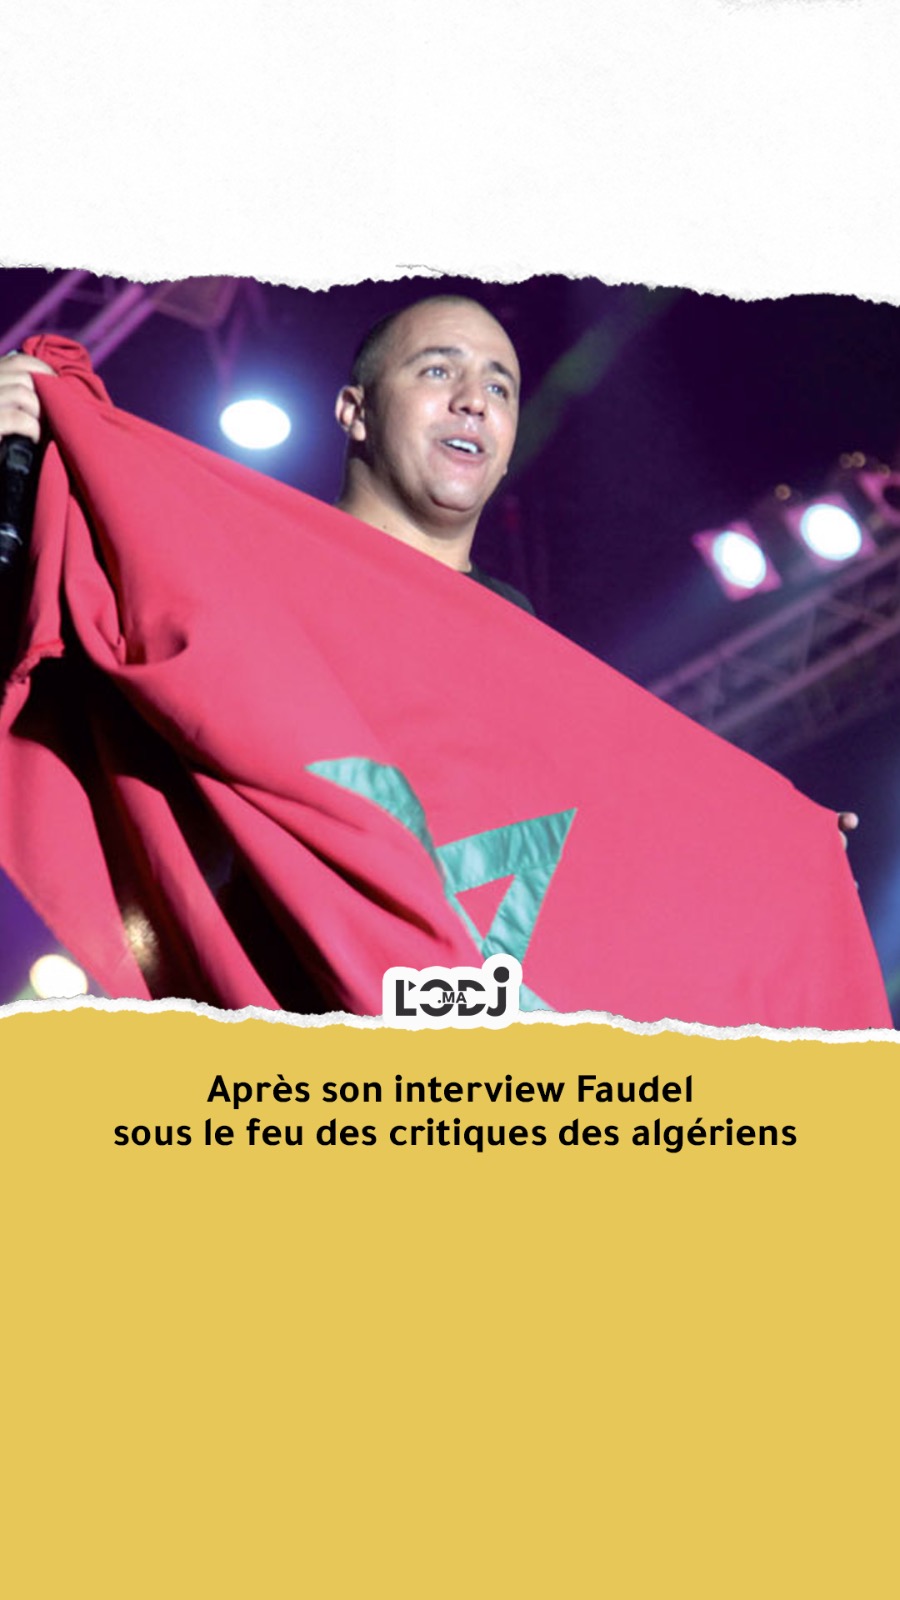 Après son interview "Faudel" sous le feu des critiques des algériens